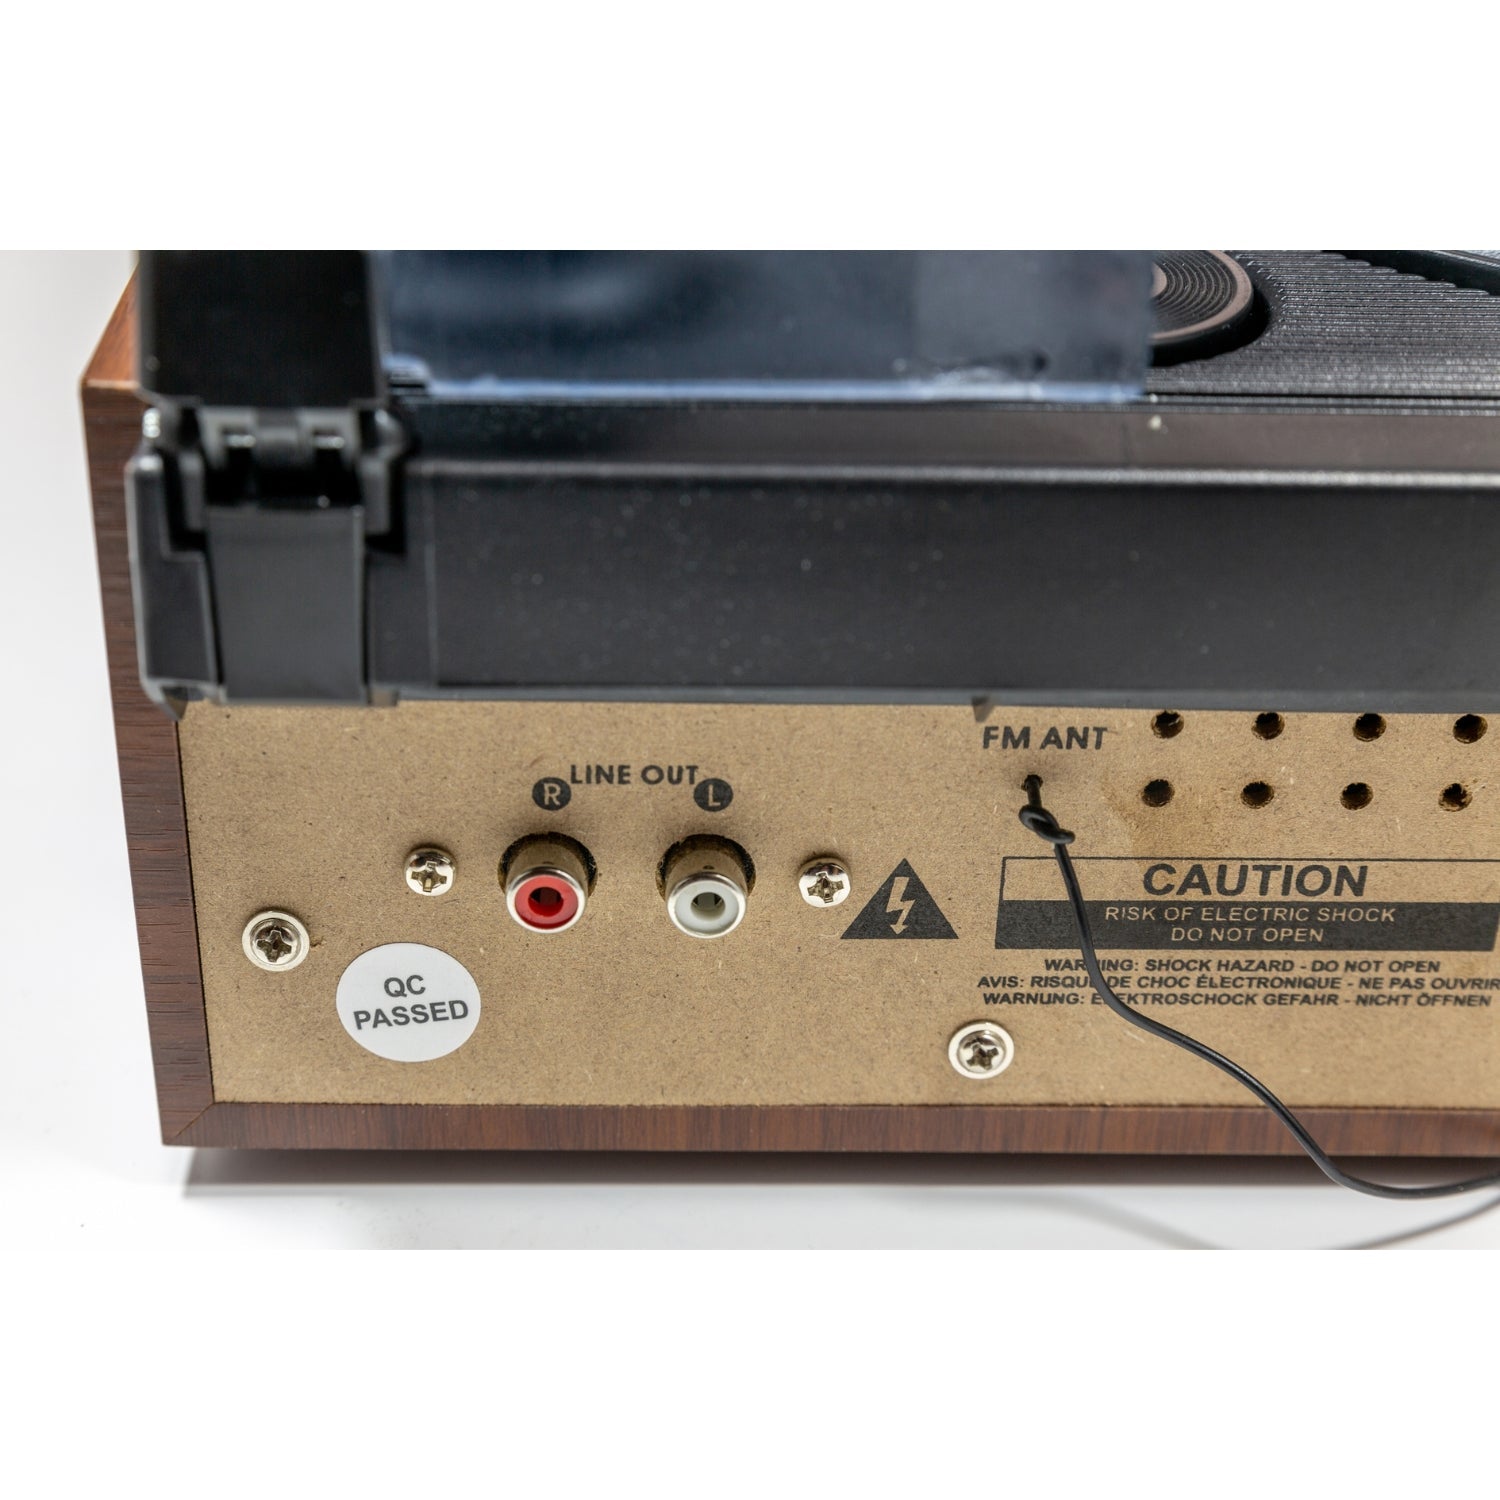 Soundmaster PL186H Plattenspieler Radio eingebaute Lautsprecher Kopfhörerbuchse Retro Nostalgie